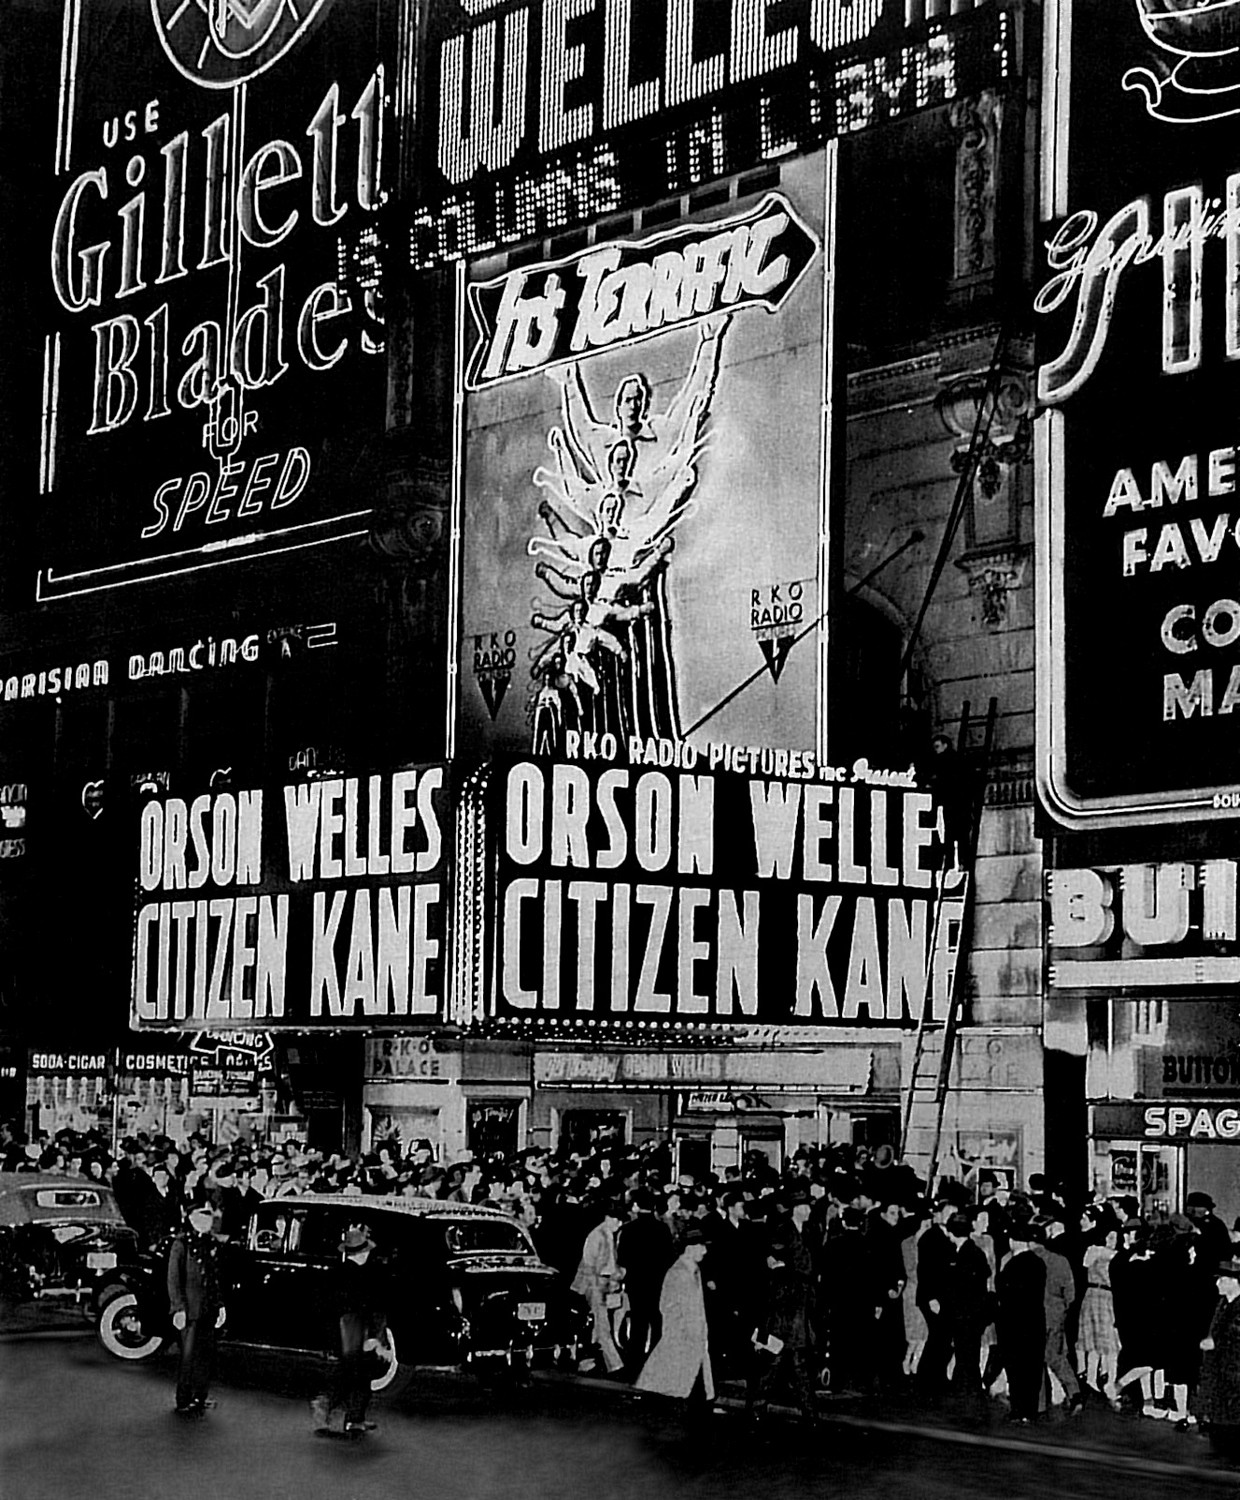 Citizen Kane premiere, 1941